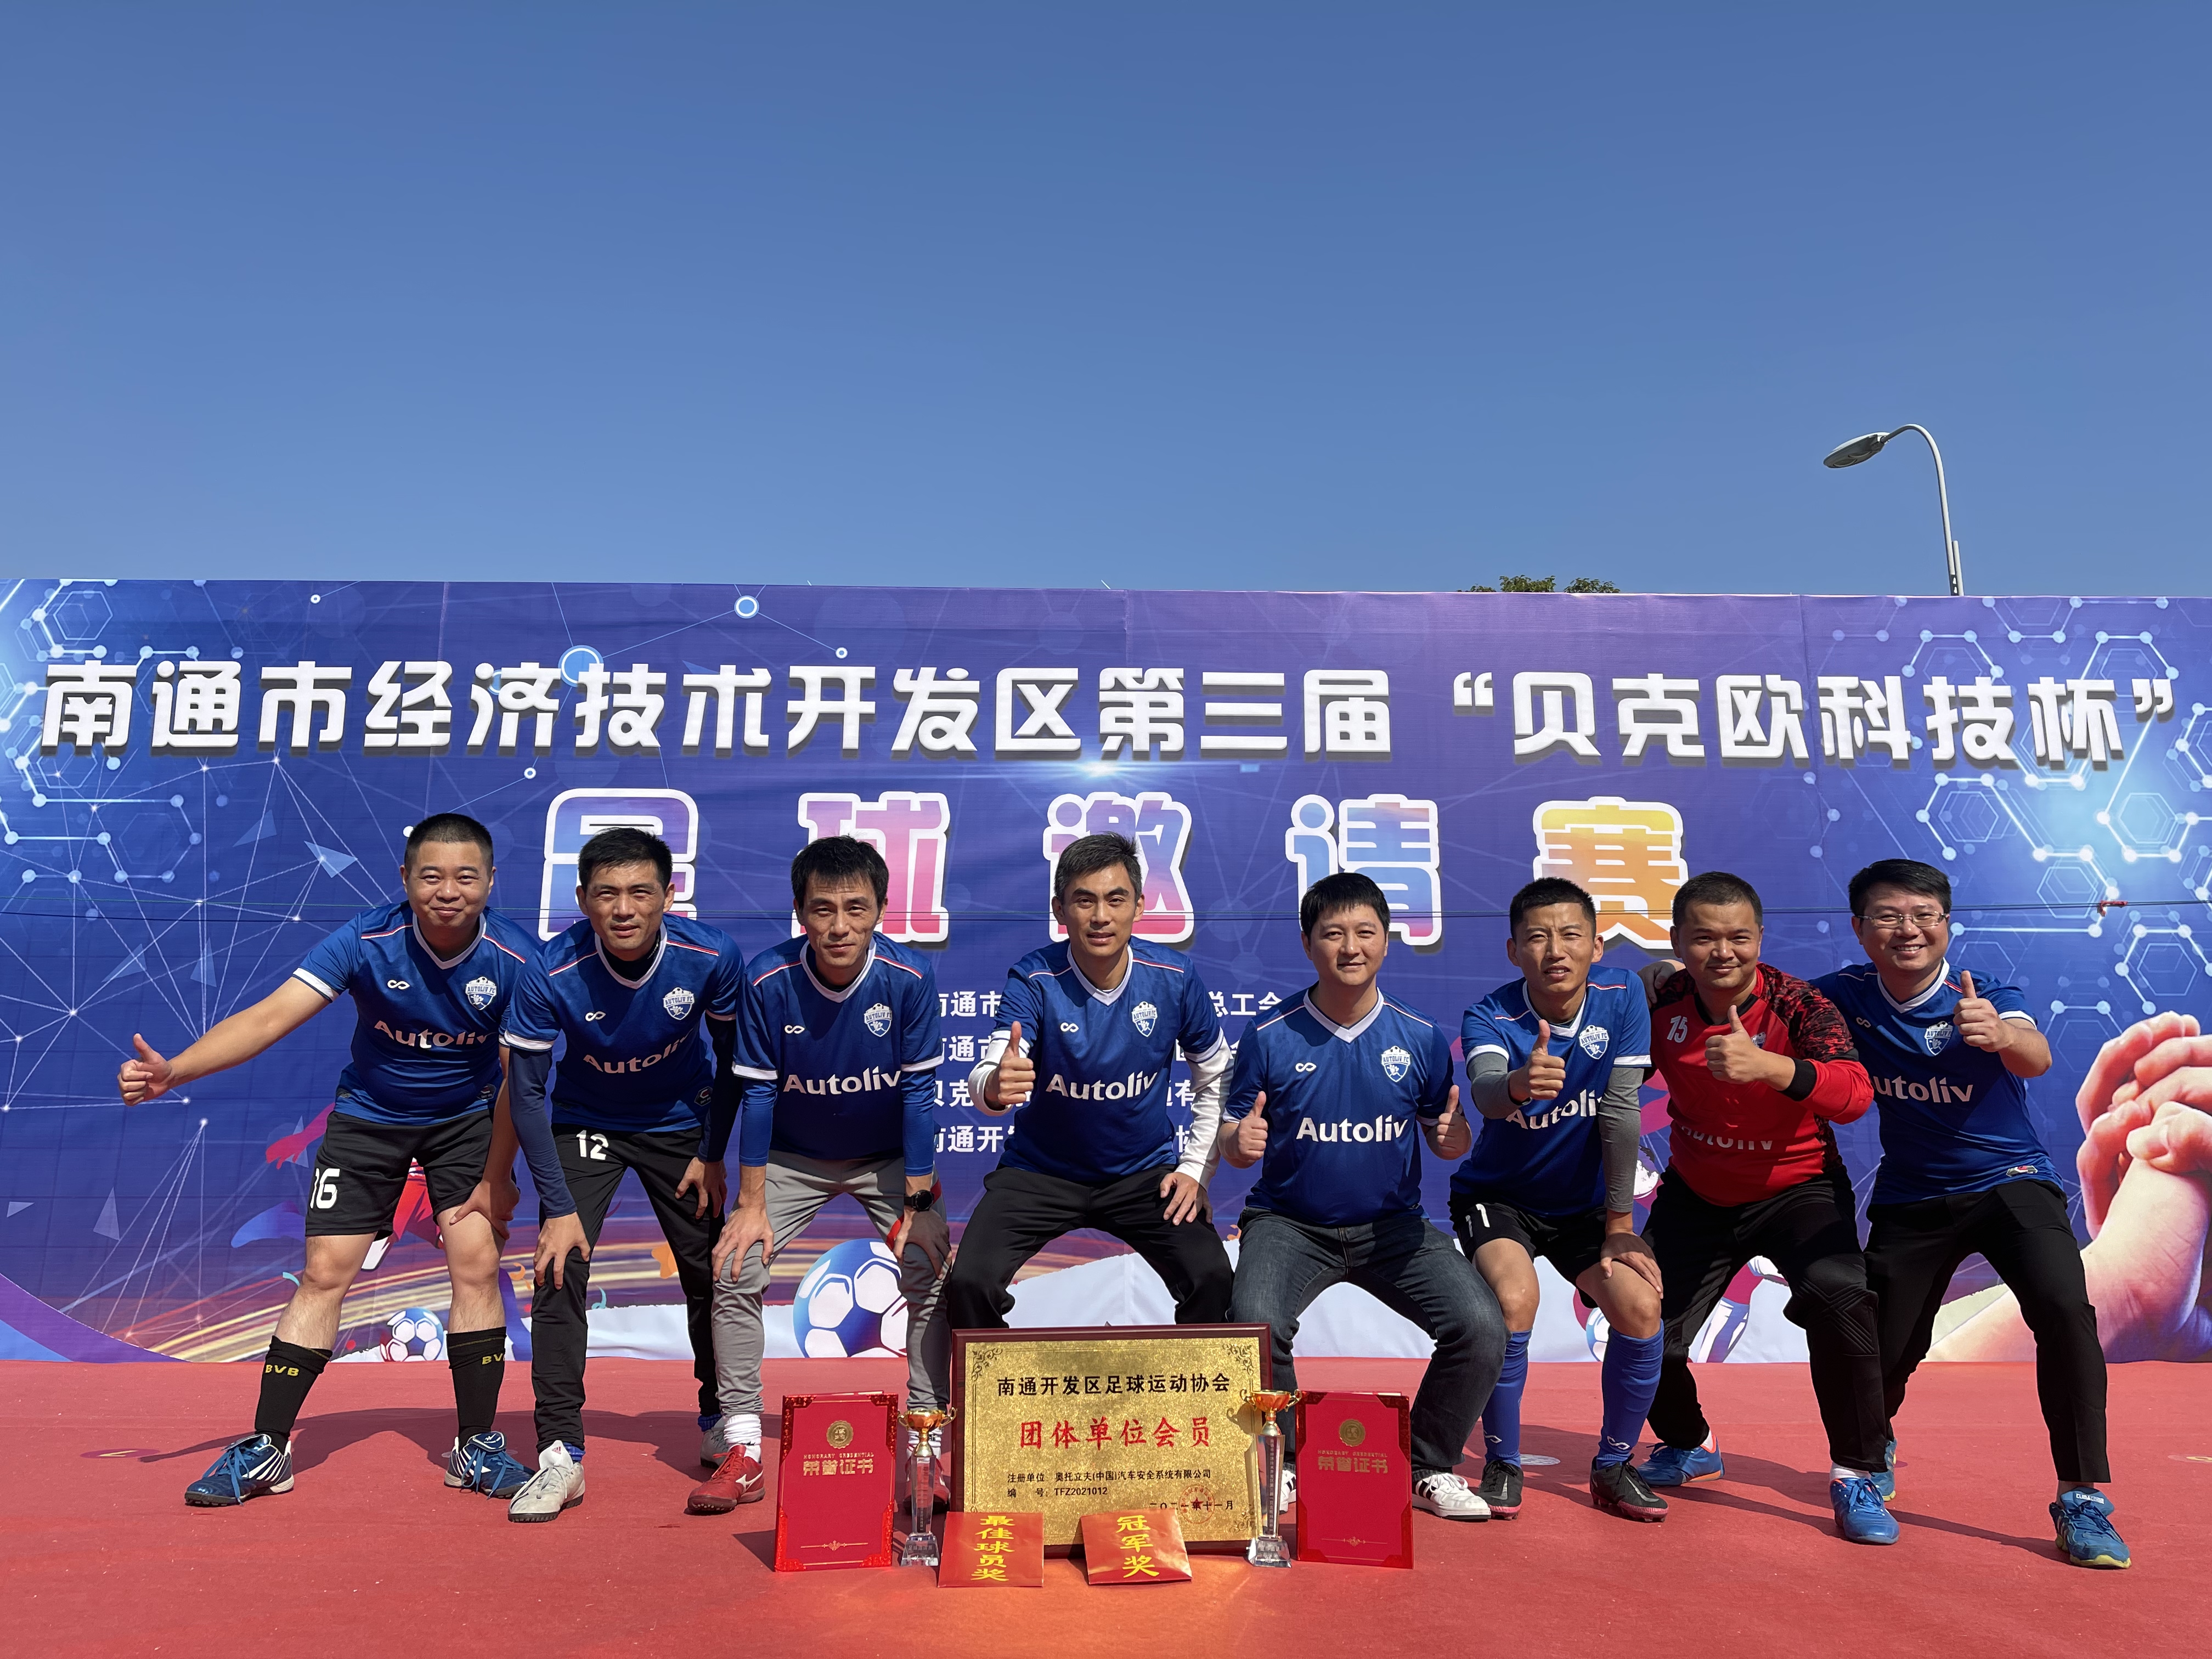 第三届“贝克欧（上海）净化系统科技有限公司杯”足球邀请赛于2021年11月14日圆满闭幕